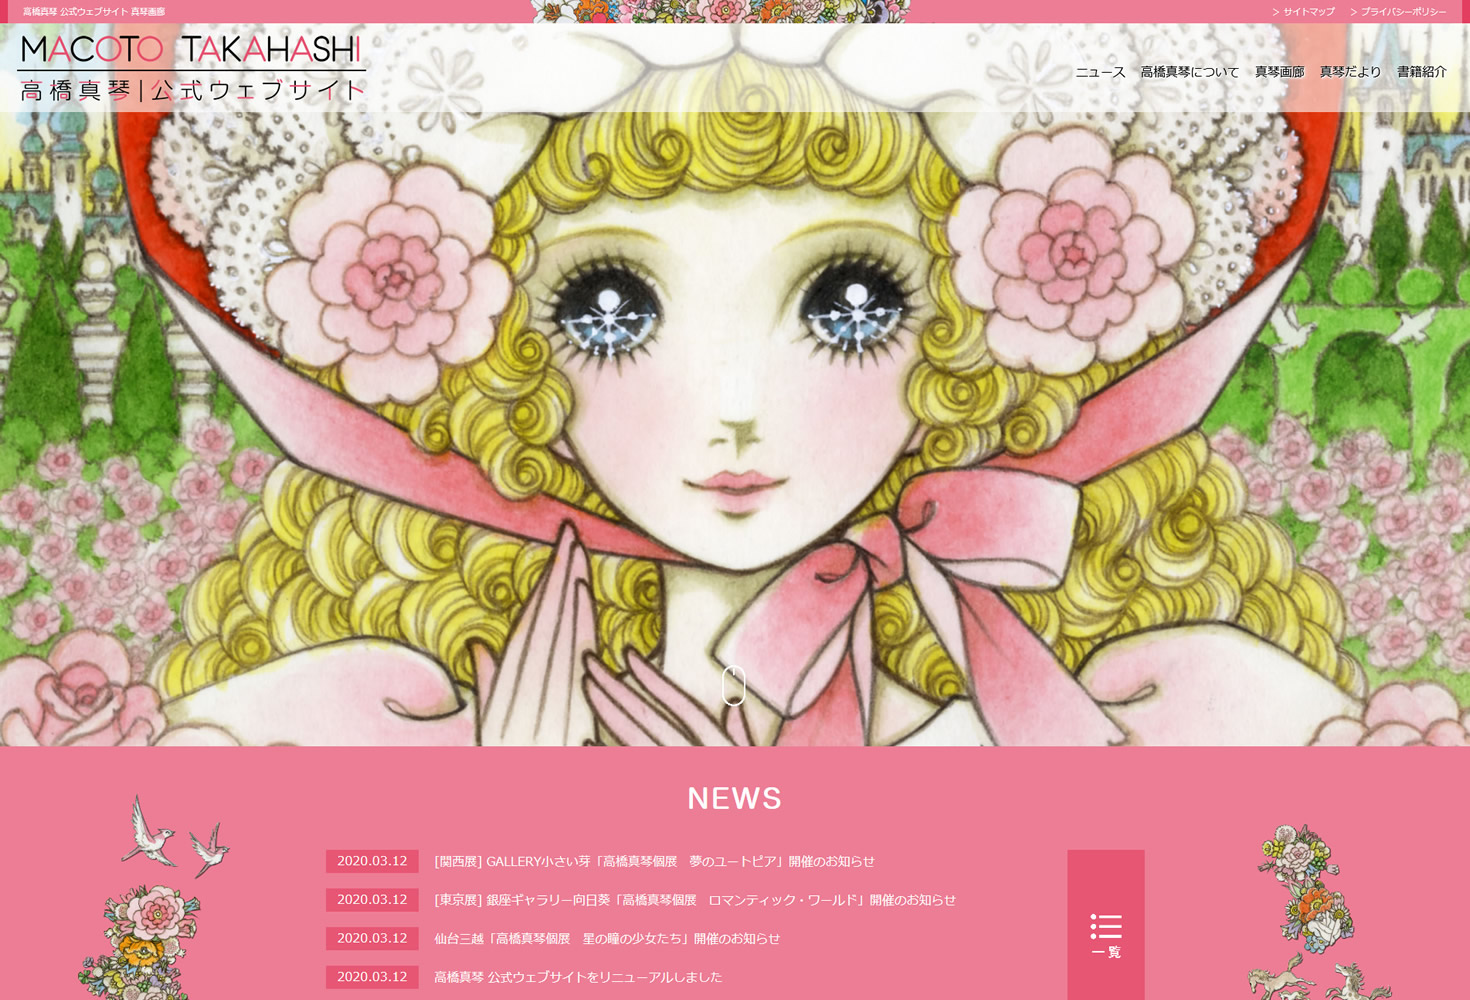 高橋真琴 公式ウェブサイト 真琴アート株式会社